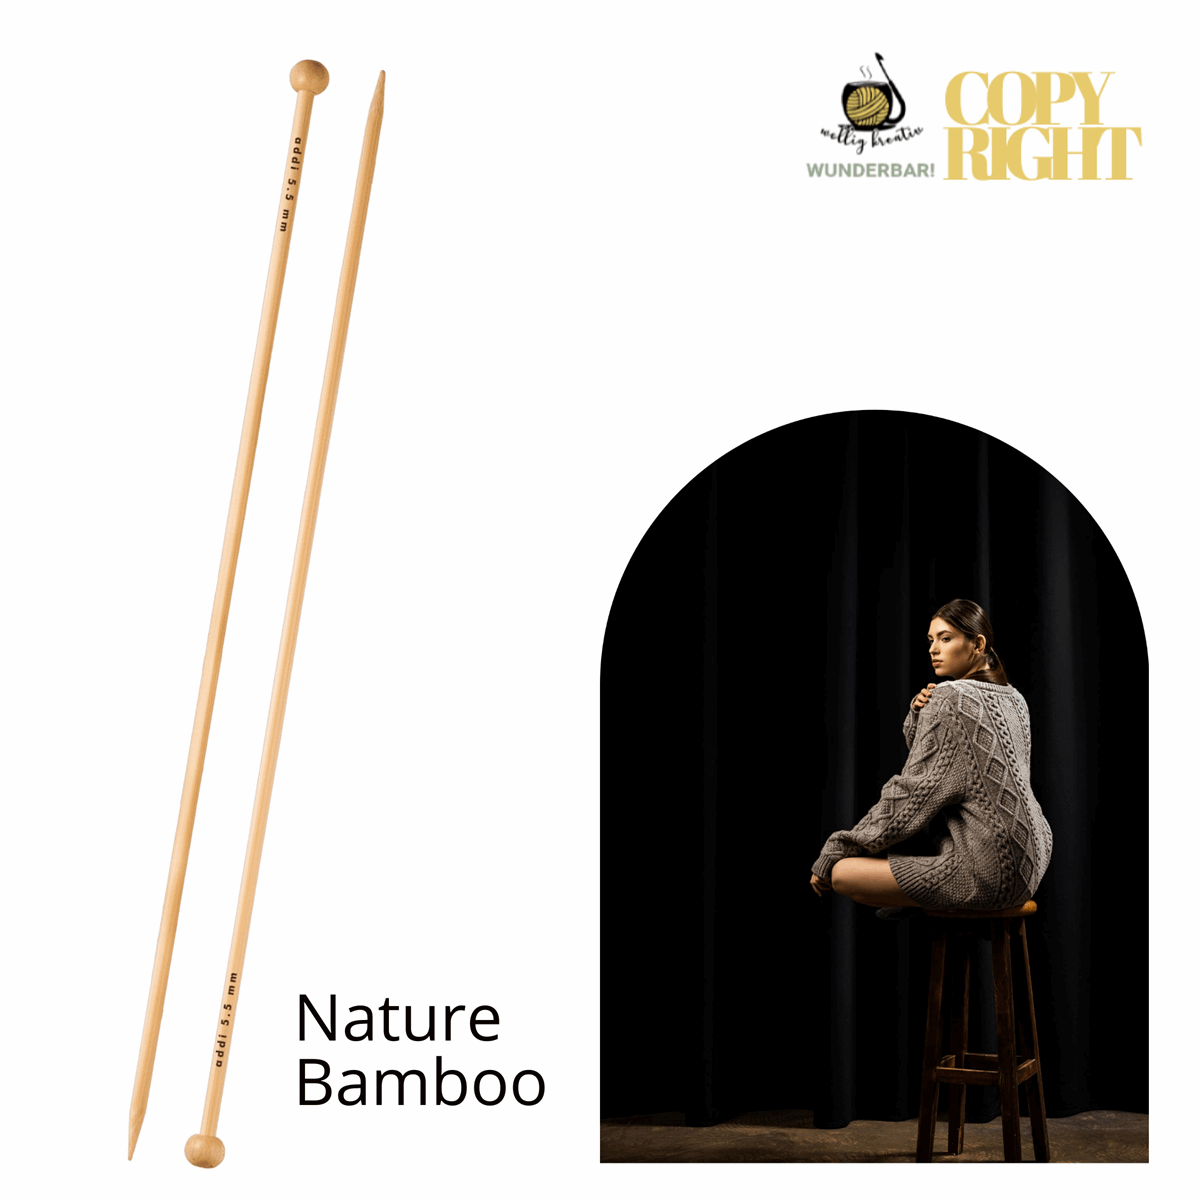 Addi, Nature Bamboo jacket knitting needle, 65007, size 2, length 35